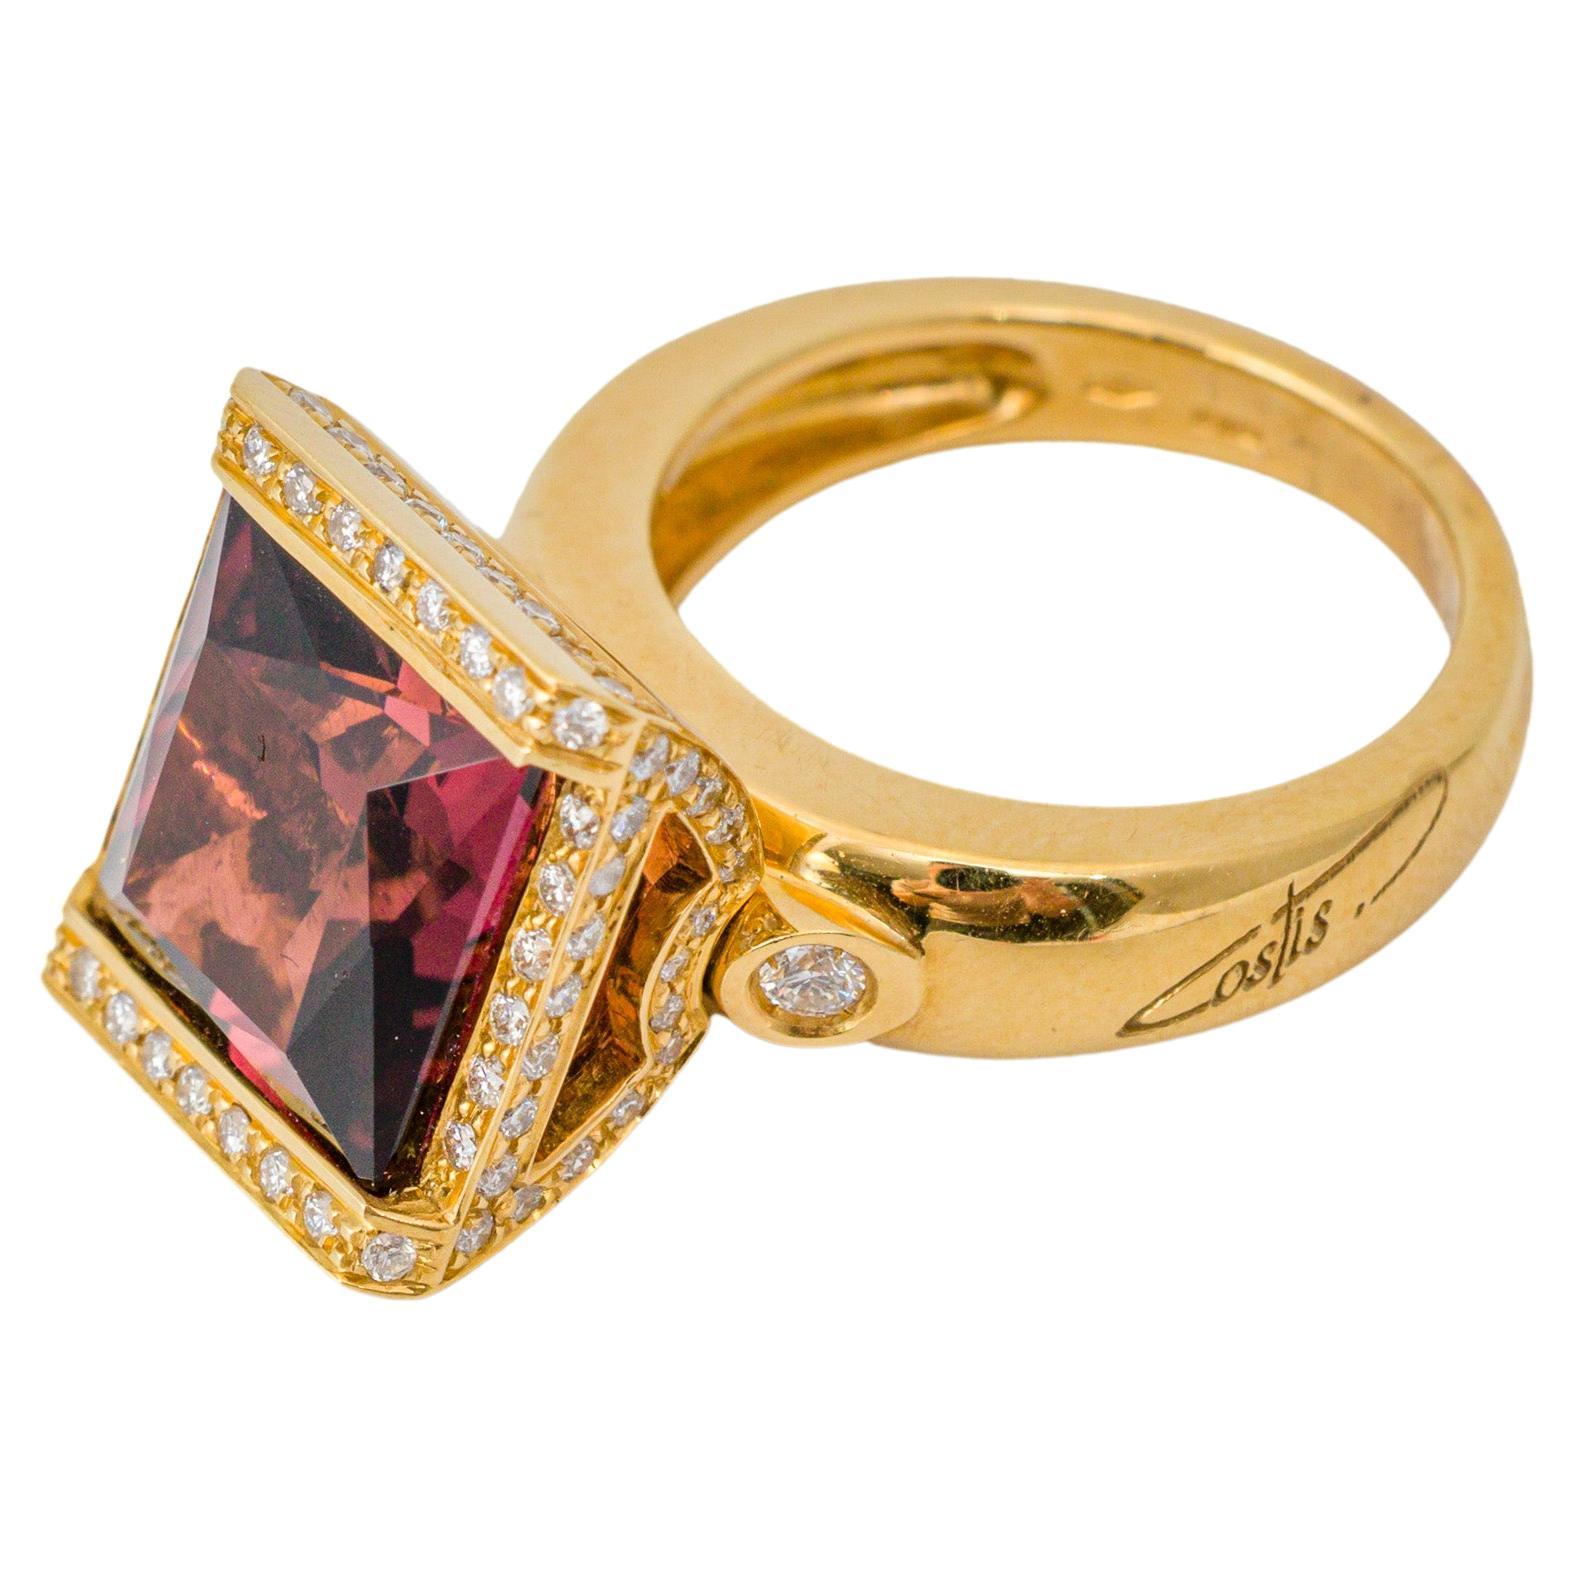 Bague carrée « Costis » en mouvement avec tourmaline rose de 8,36 carats et diamants